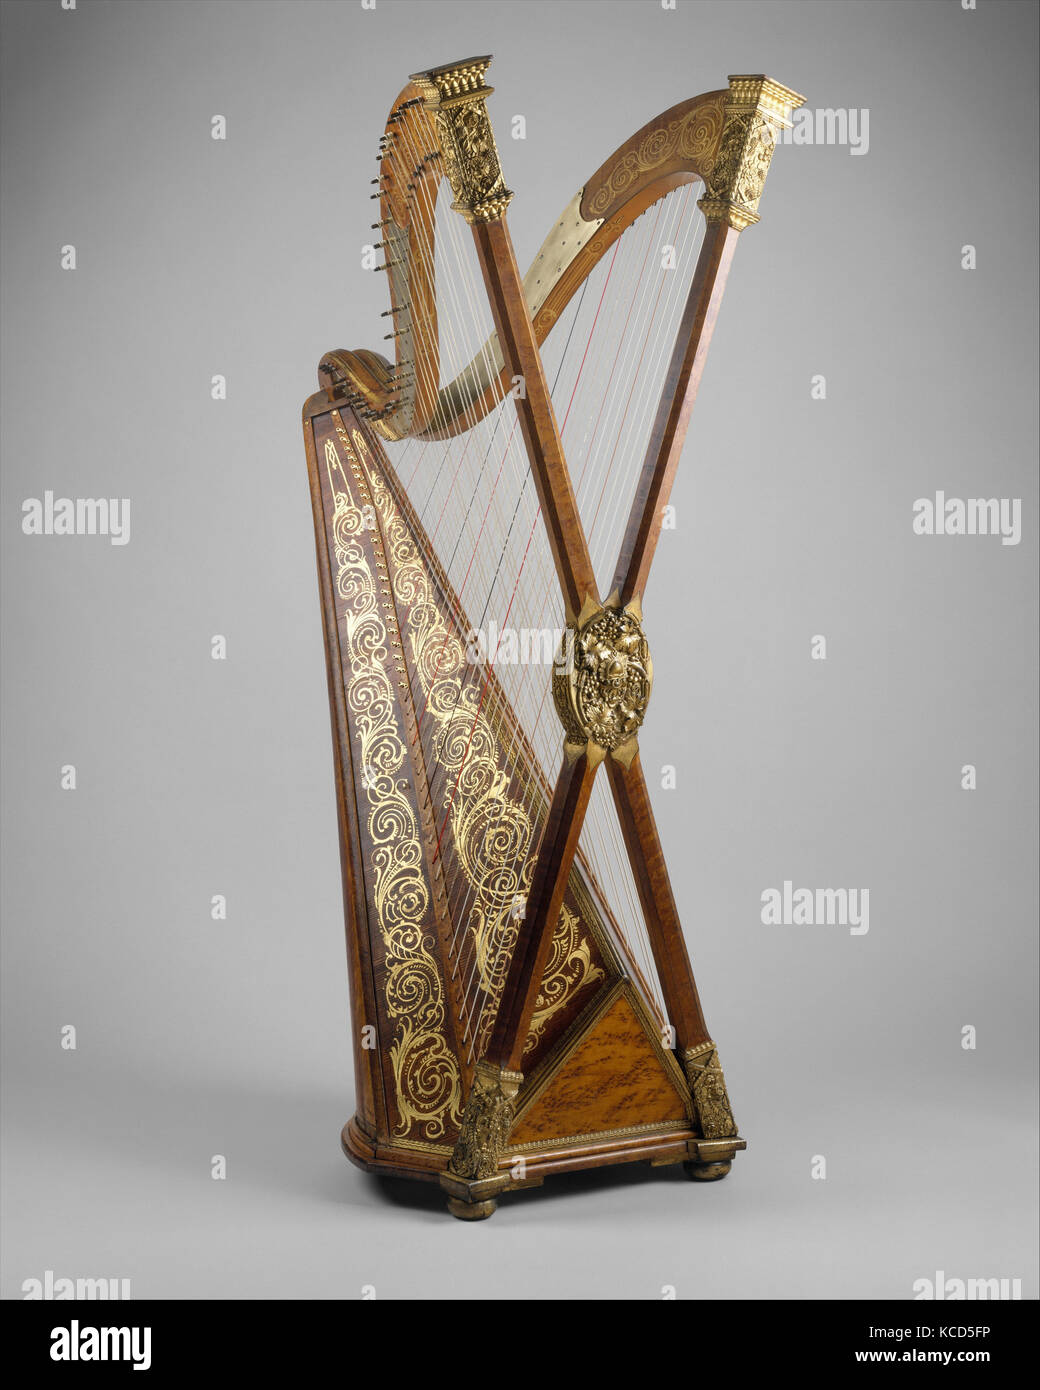 Harpe chromatique double, après 1895, Brooklyn, New York, United States, American, l'épinette, l'érable, du métal, de la dorure, laiton, hauteur : 66 Banque D'Images